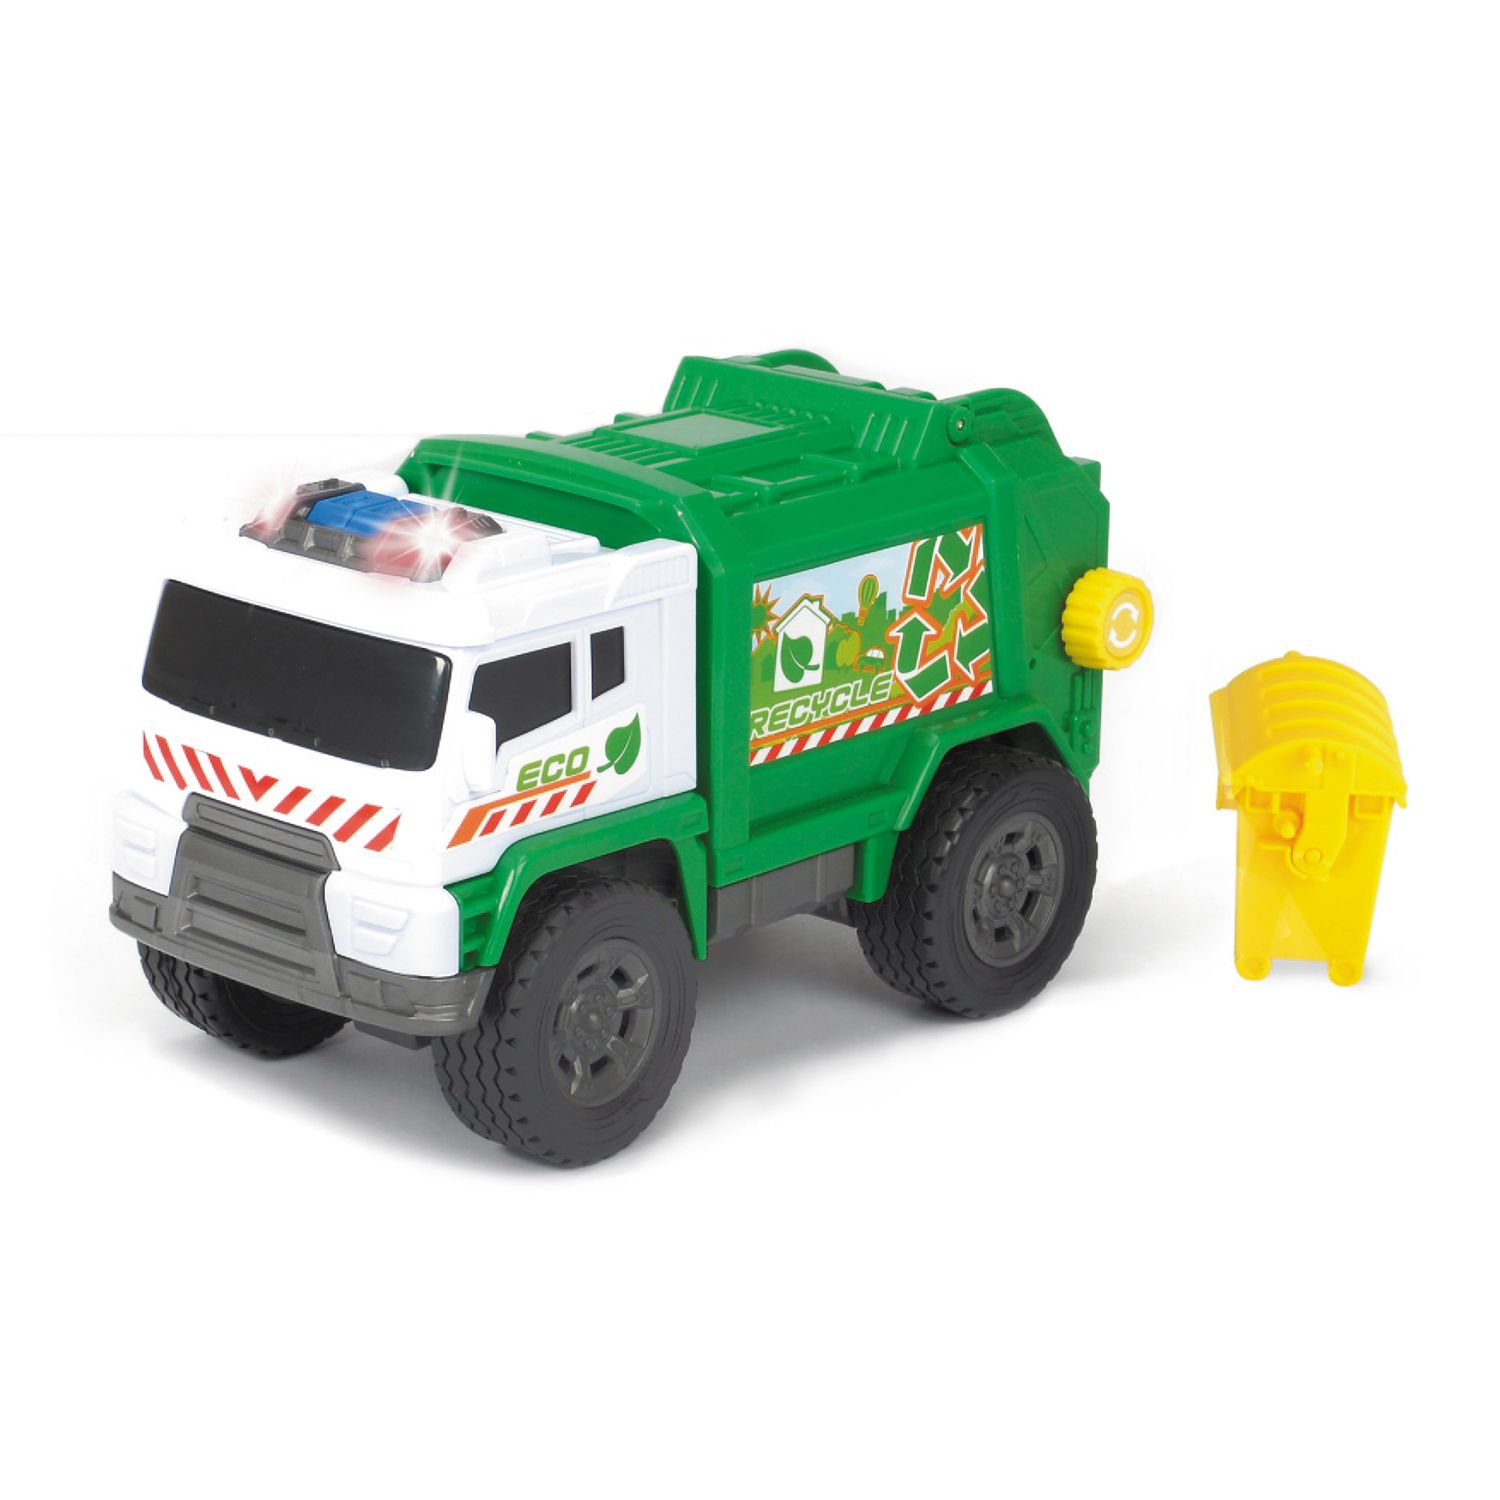 motorized toy trucks